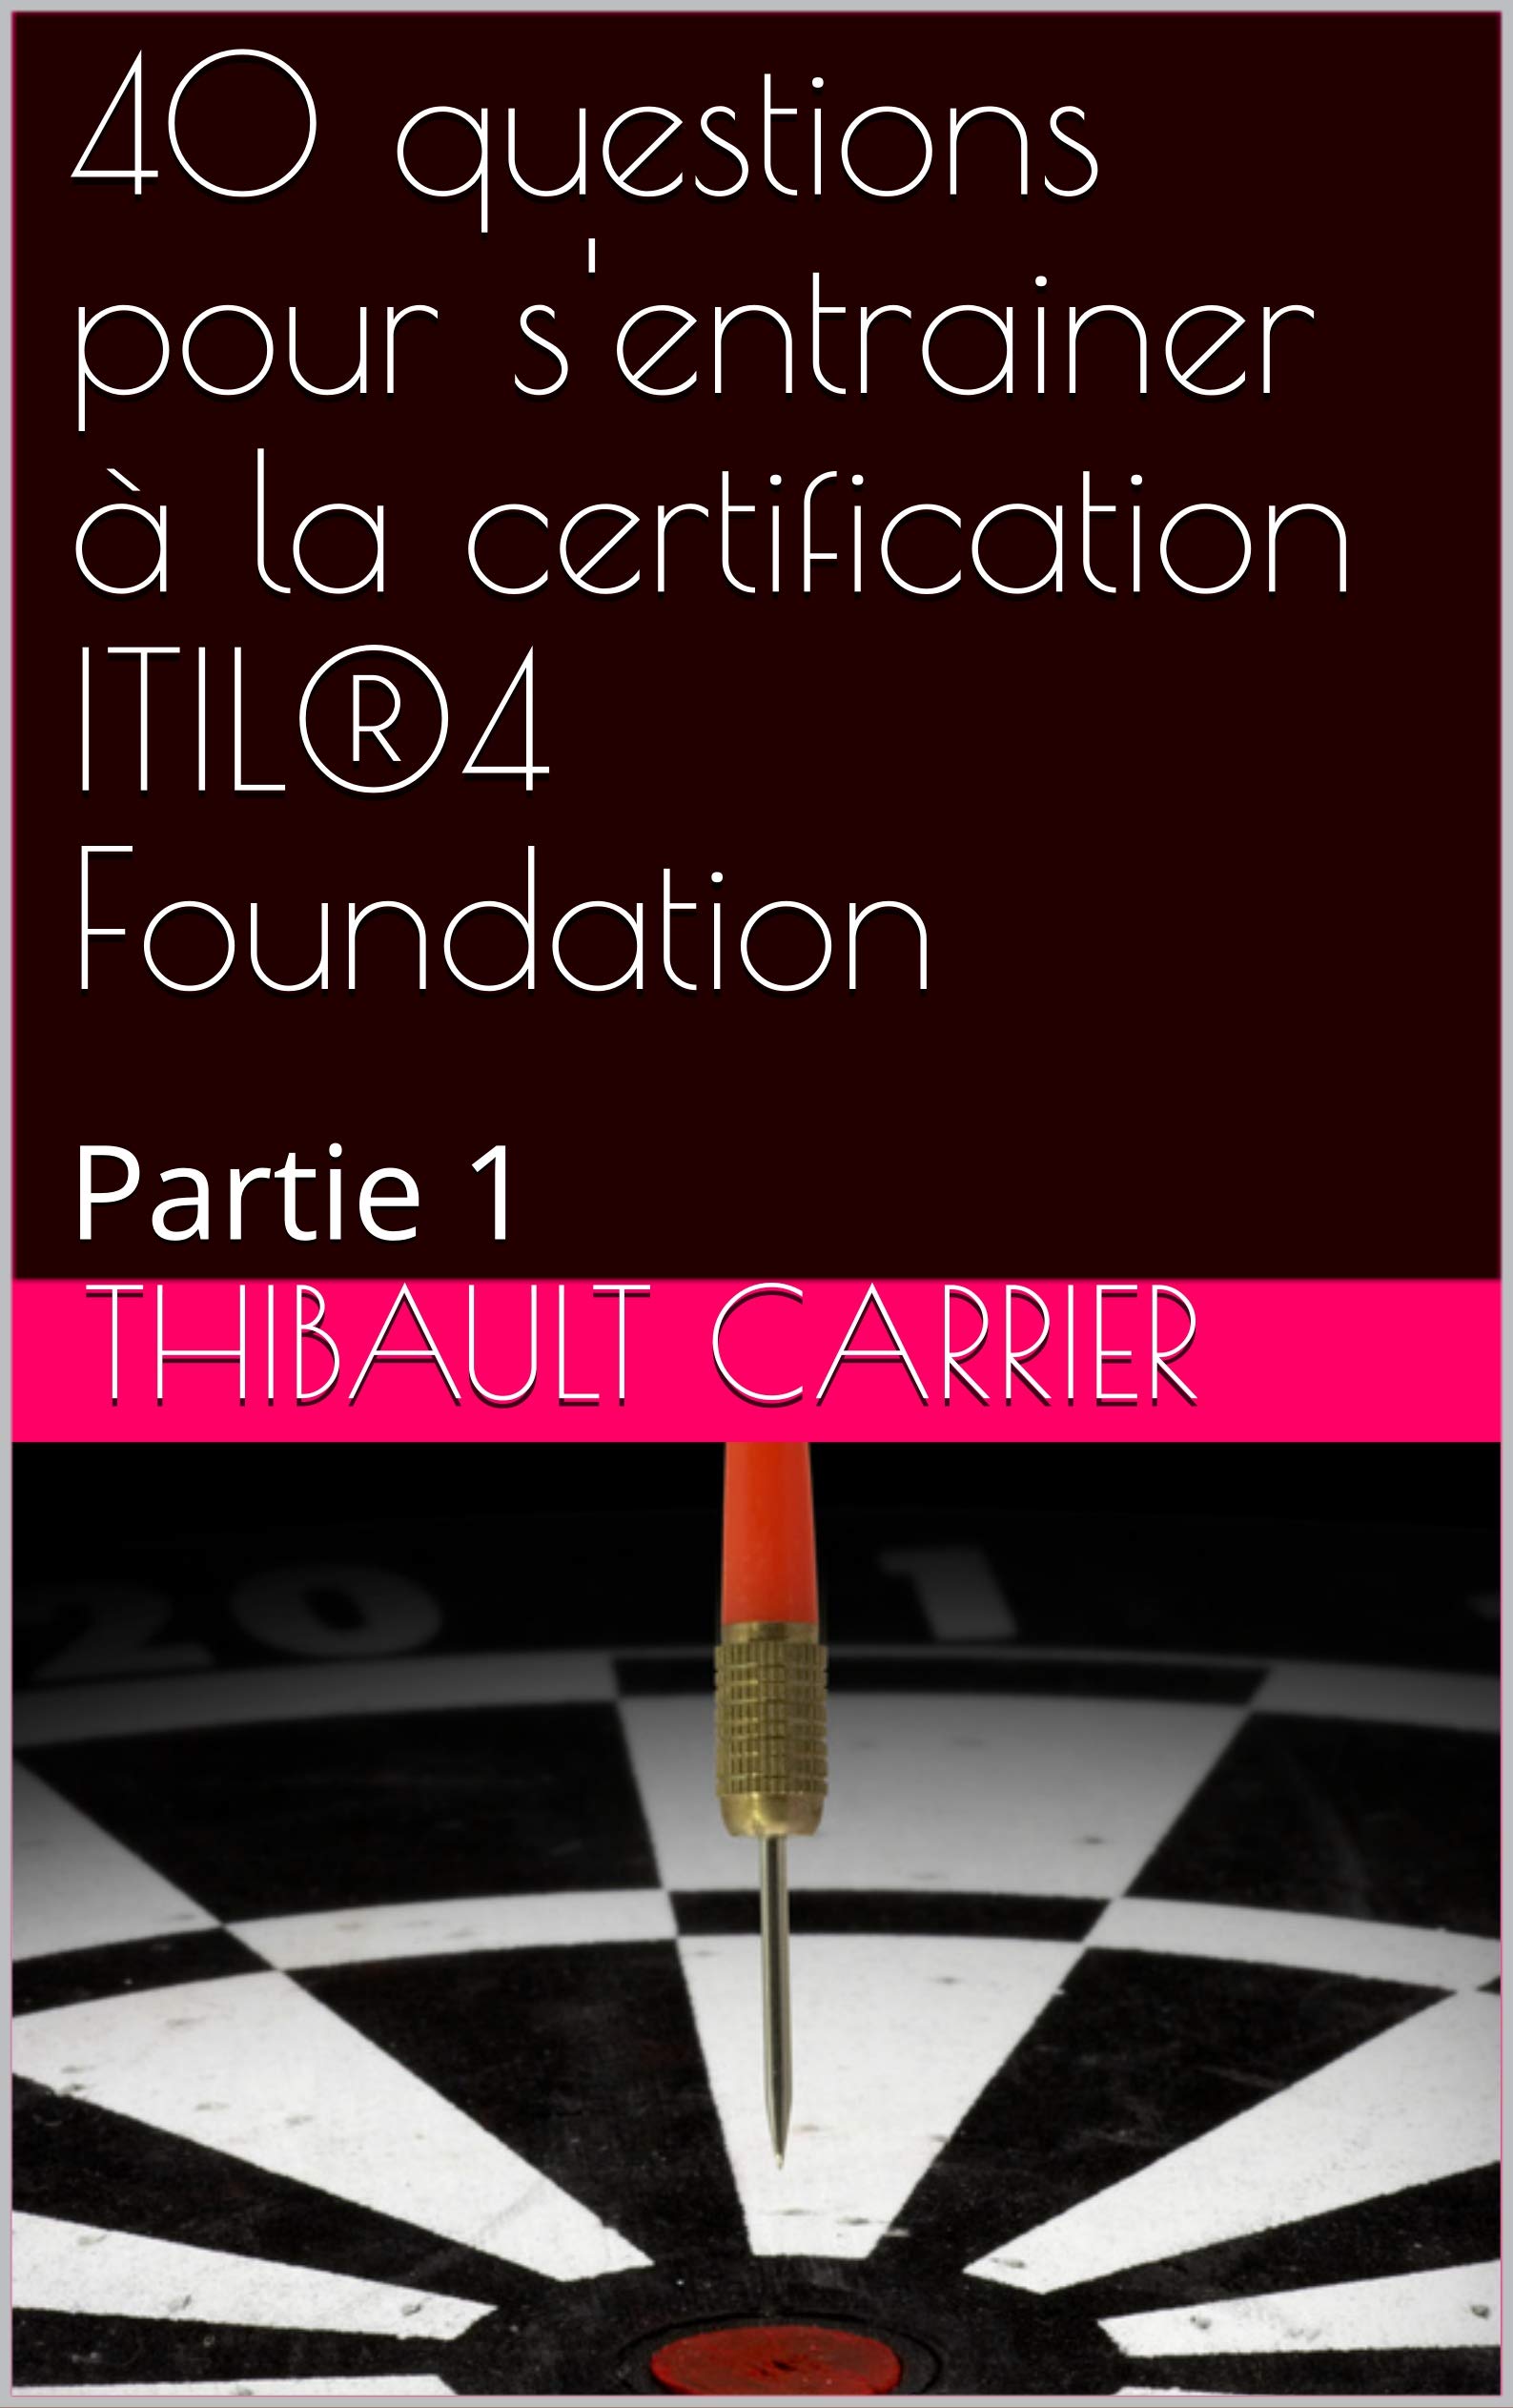 40 questions pour s'entrainer à la certification ITIL®4 Foundation: Partie 1 (French Edition)